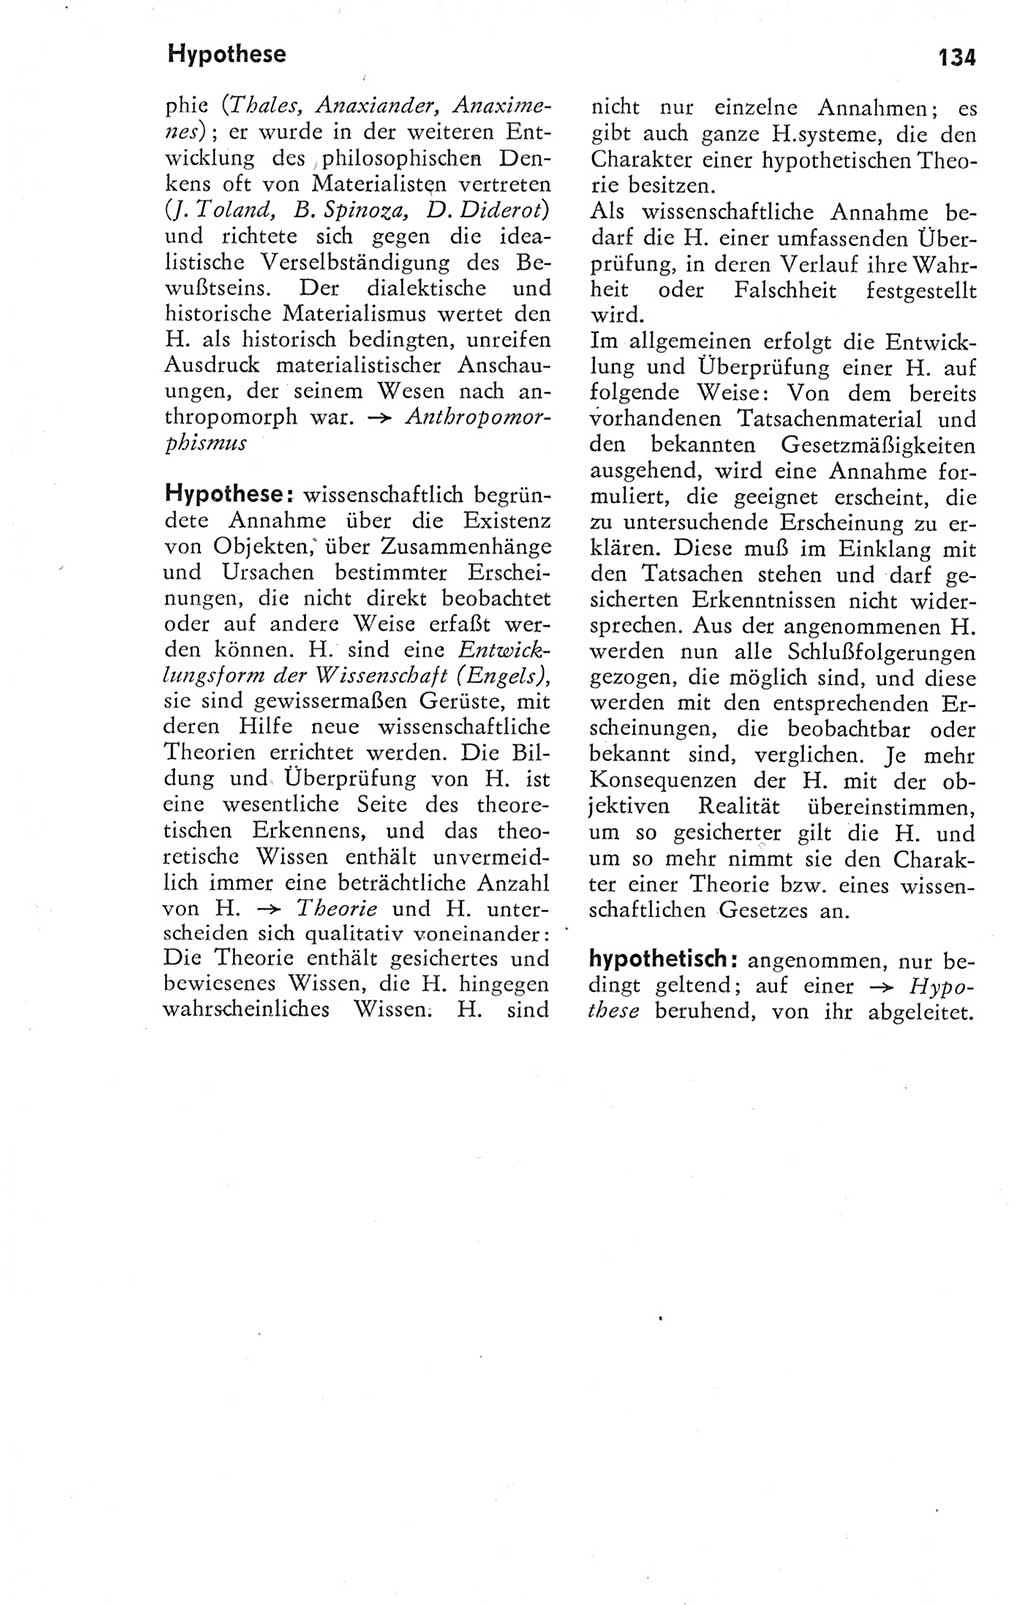 Kleines Wörterbuch der marxistisch-leninistischen Philosophie [Deutsche Demokratische Republik (DDR)] 1974, Seite 134 (Kl. Wb. ML Phil. DDR 1974, S. 134)